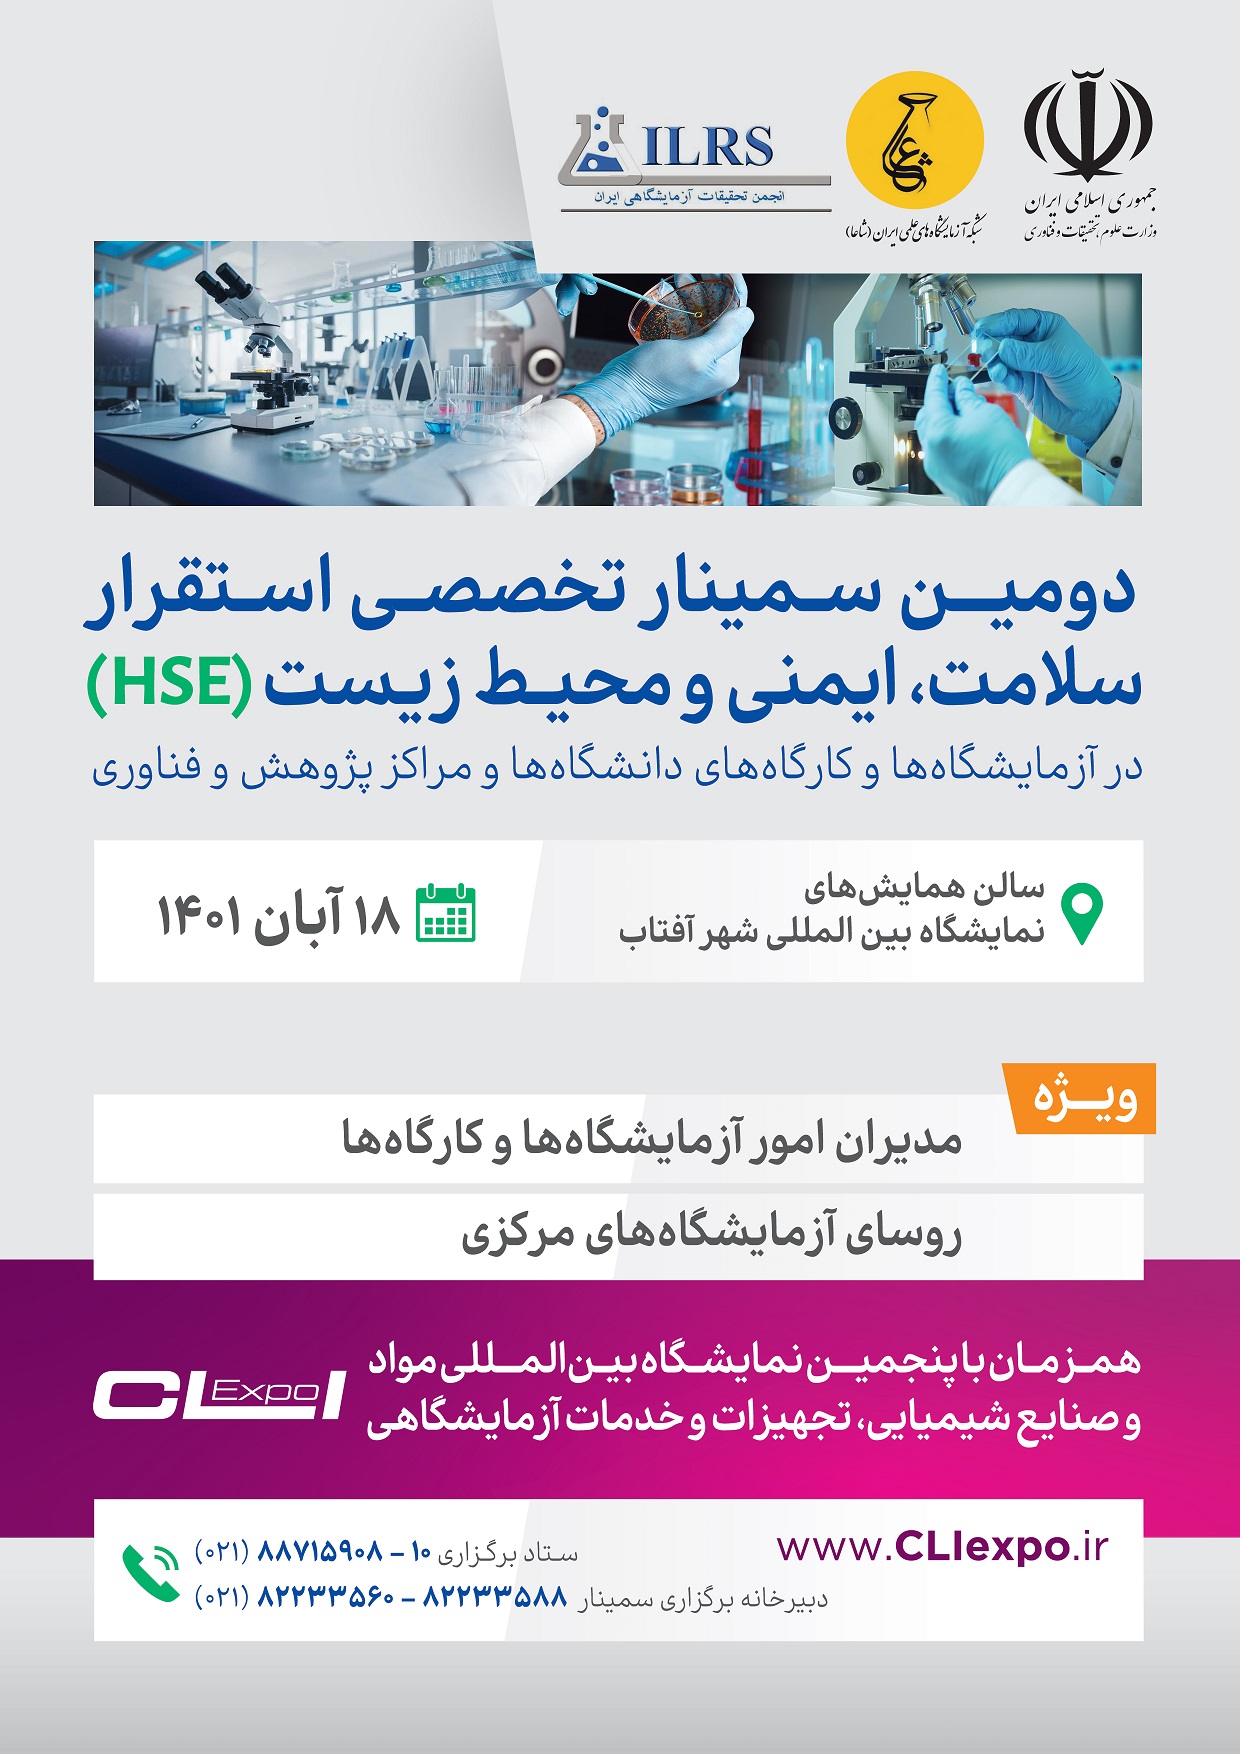 دومین سمینار تخصصی استقرار سلامت، ایمنی، محیط زیست (HSE) در آزمایشگاه ها و کارگاه ها